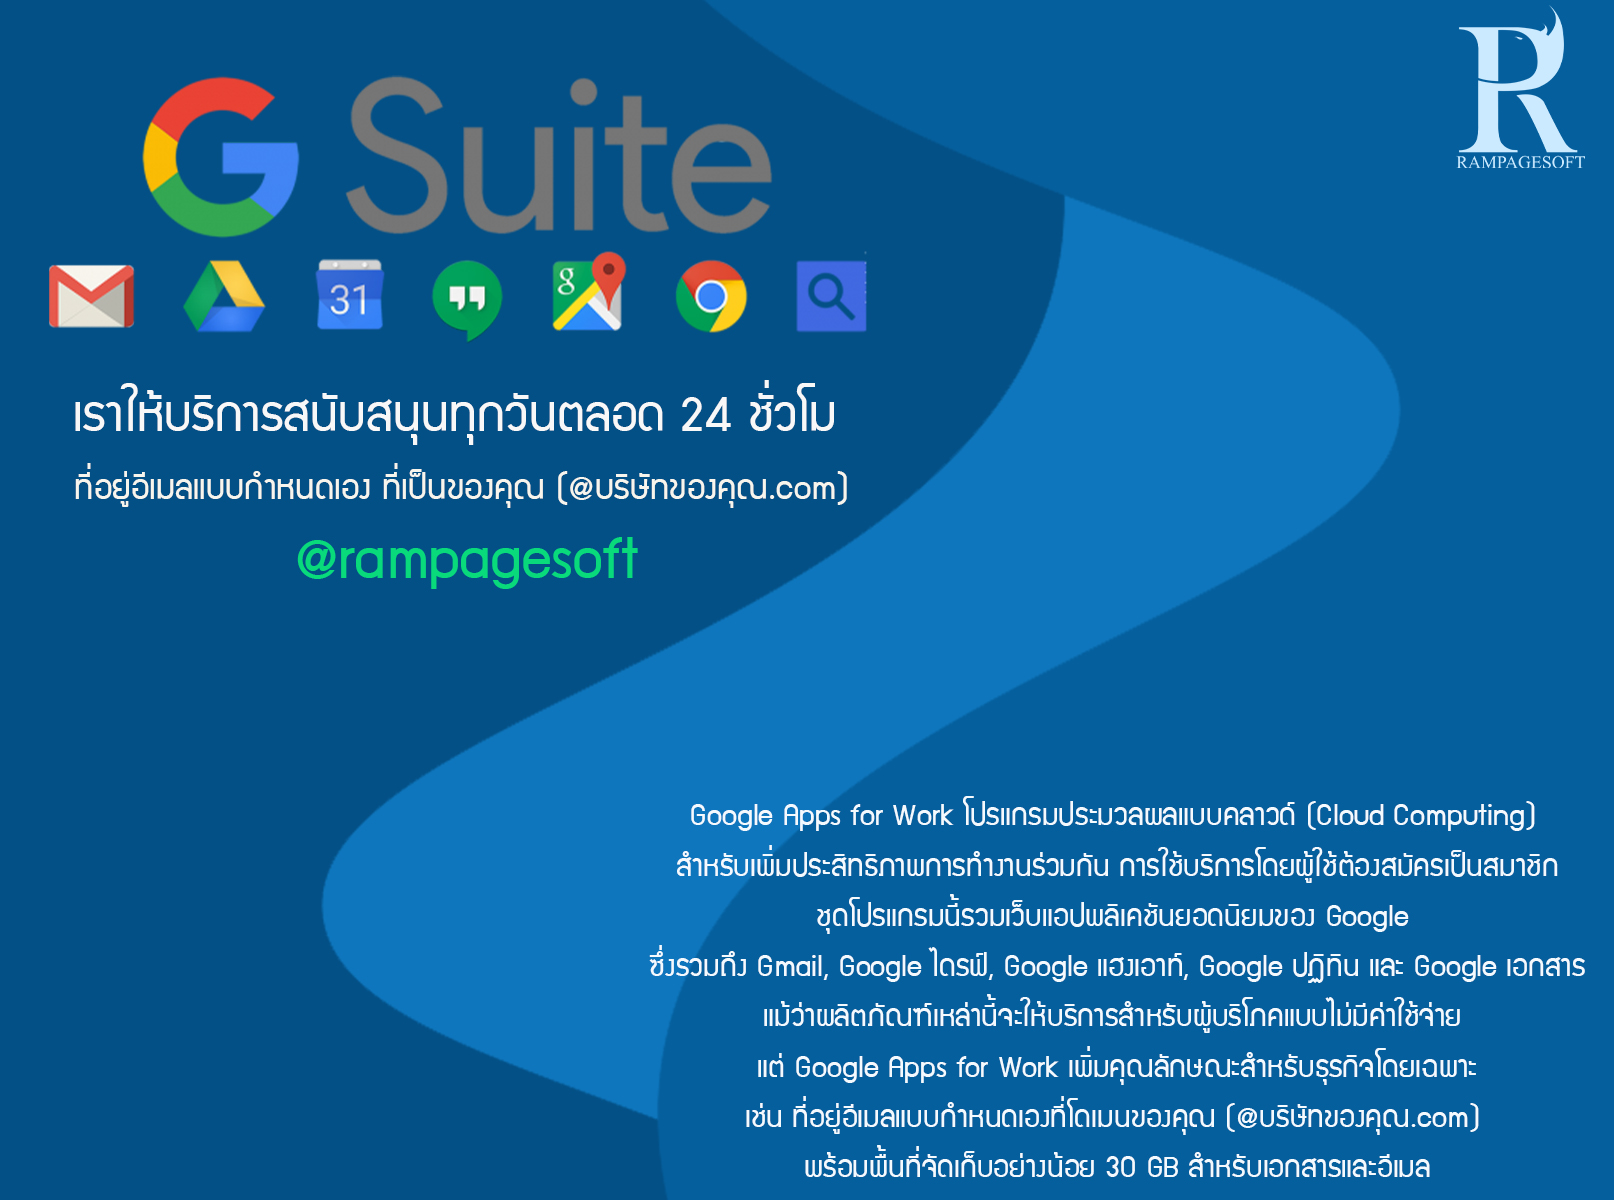 รับทําเว็บไซต์ เว็บขยายสายงาน G-Suite ประกอบด้วยอีเมลธุรกิจของ Gmail, การพิมพ์งานด้วย Google เอกสาร | TTT-WEBSITE 